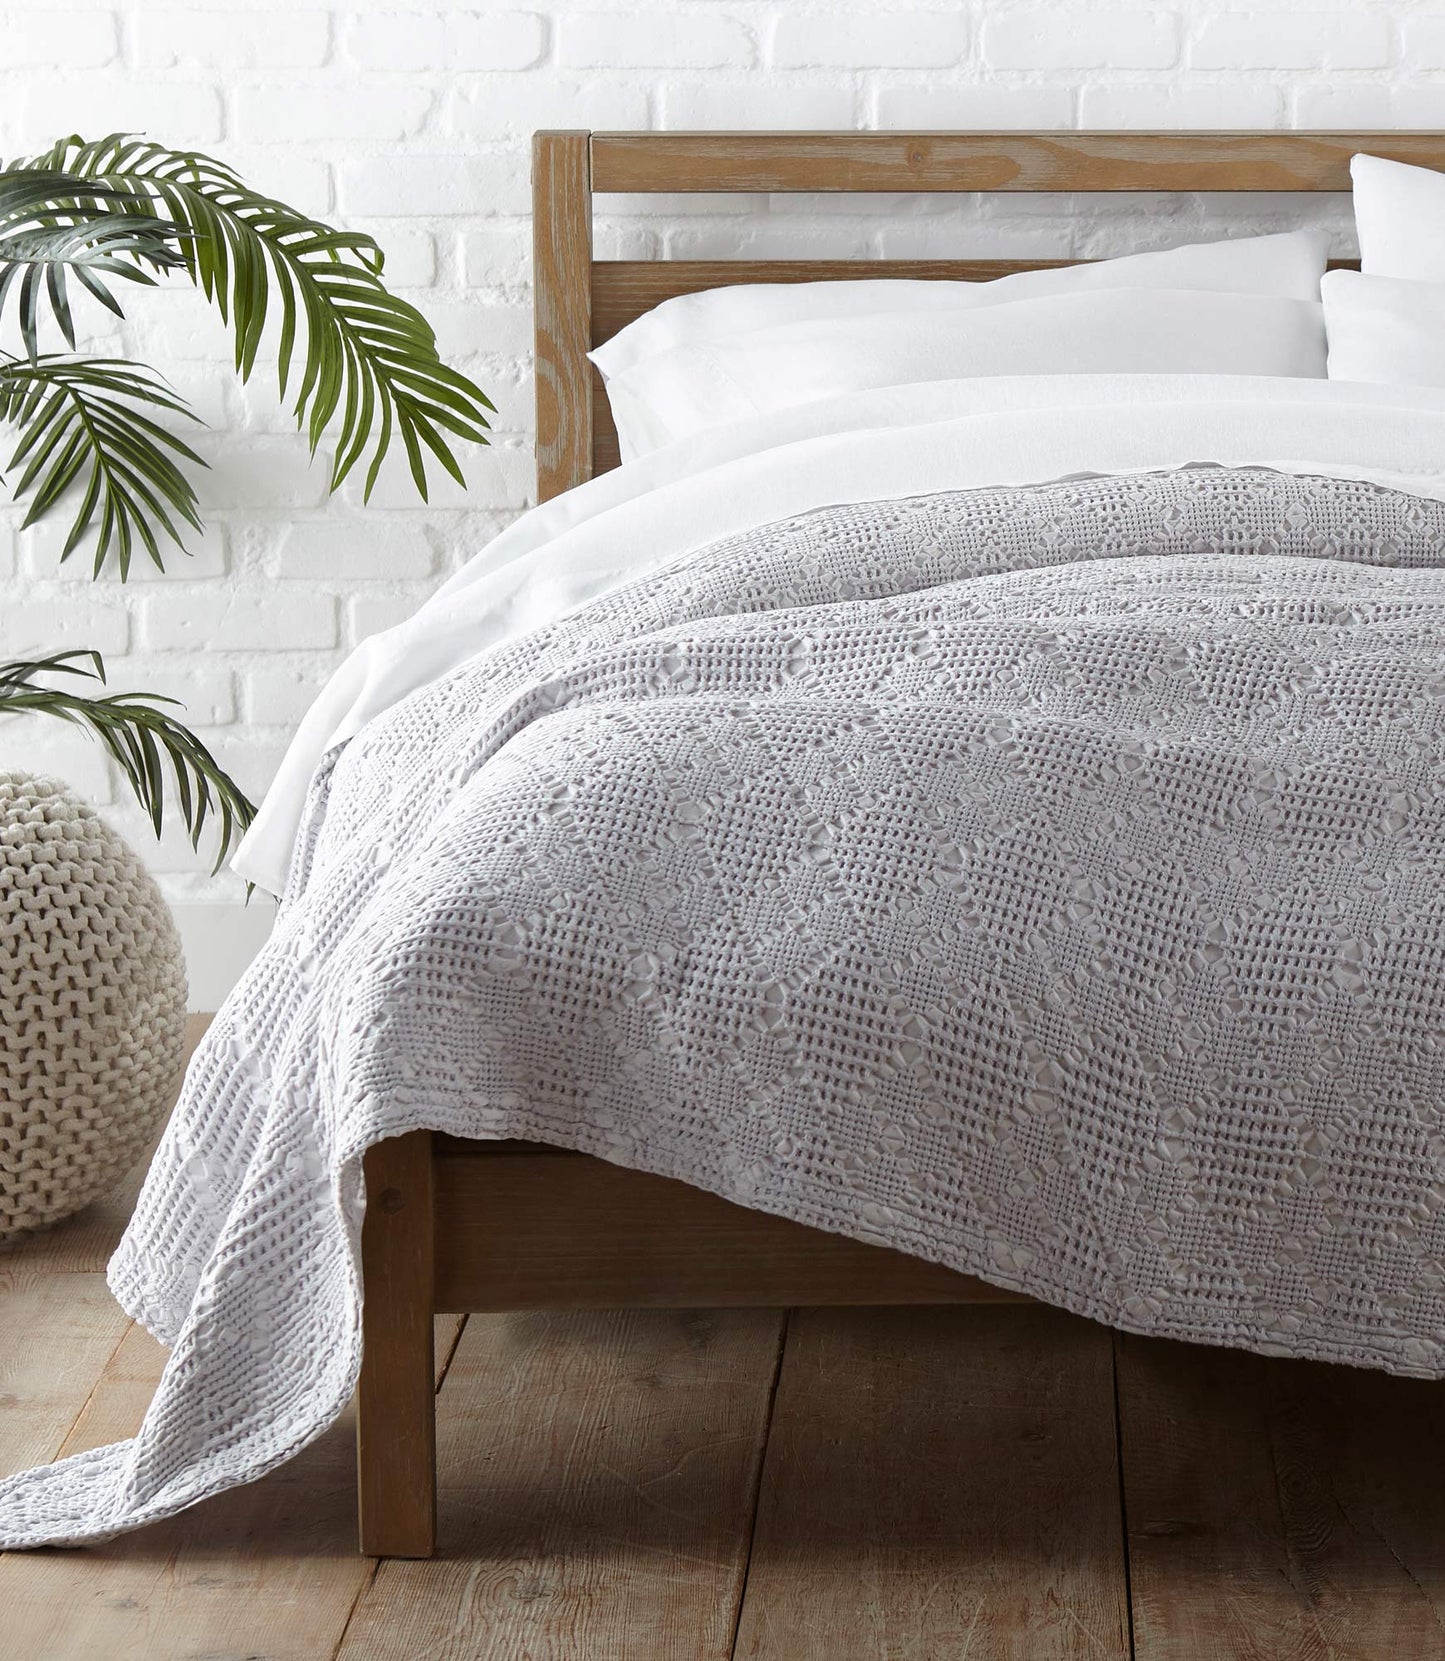 Textured Blanket Fog on bed